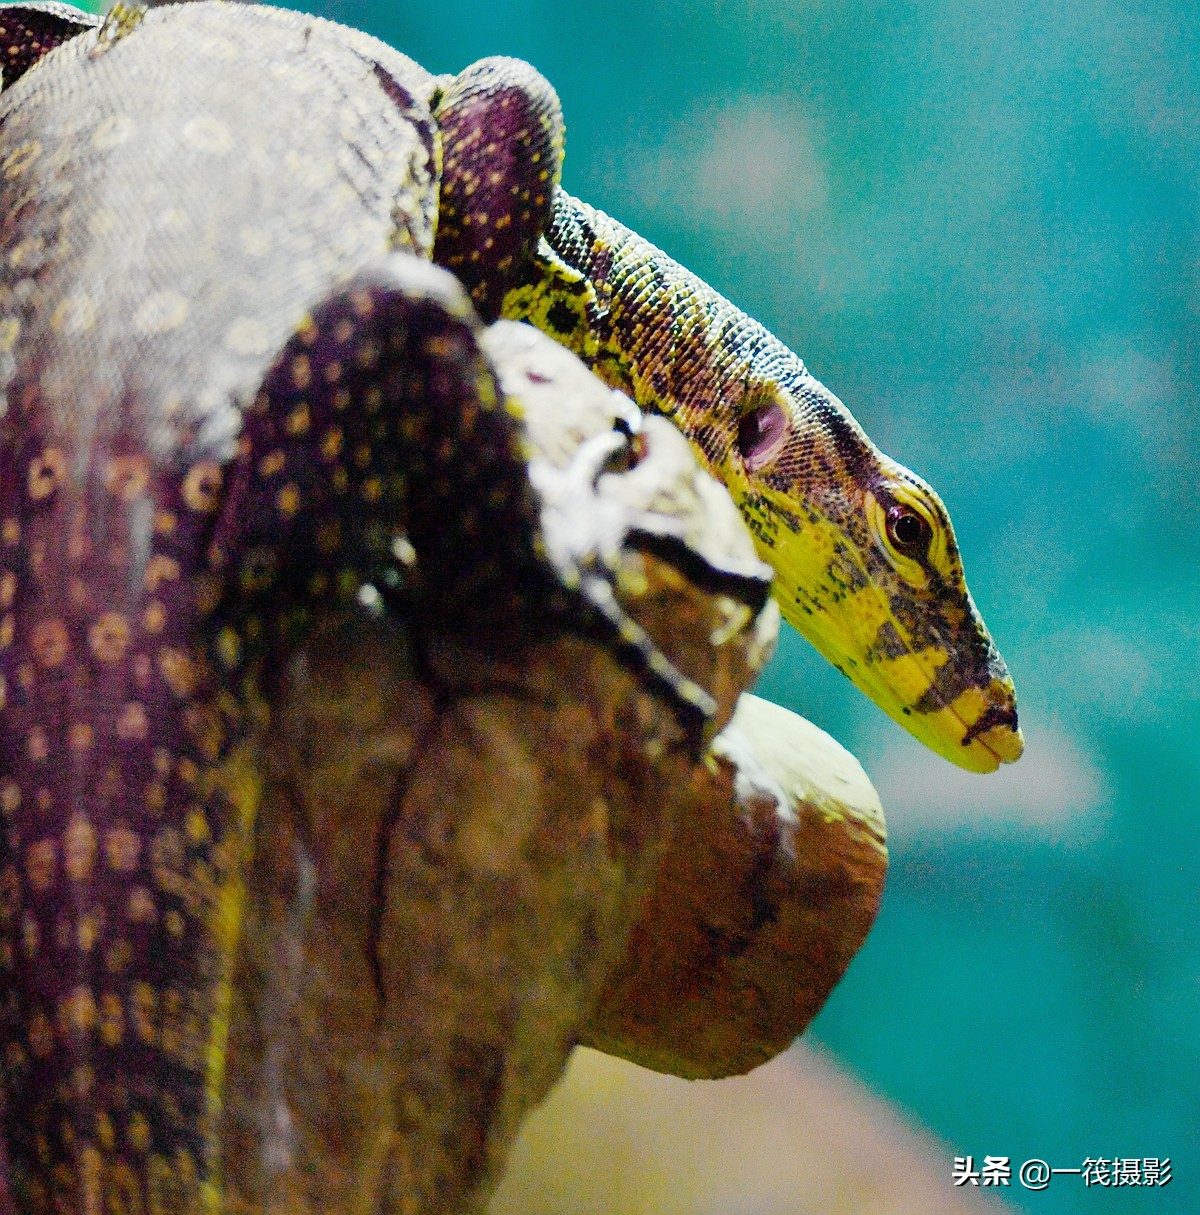 水巨蜥,中国蜥蜴中最大的一种,世界第二大蜥蜴